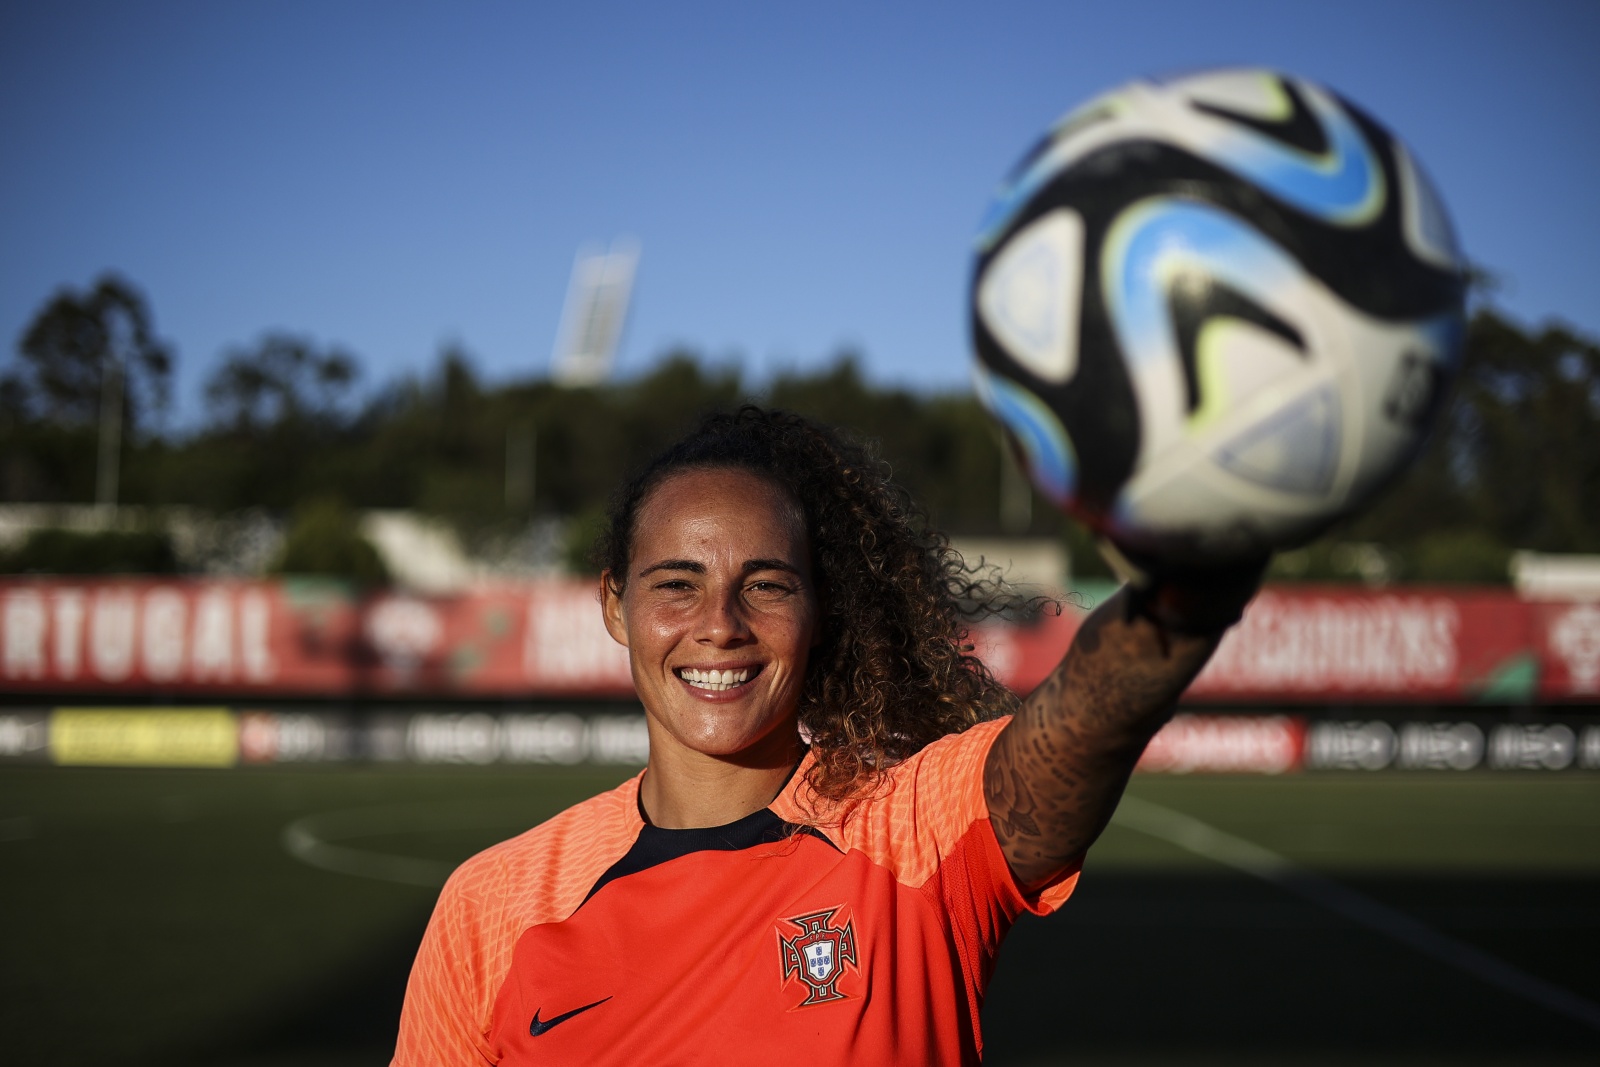 Futebol feminino: Portugal derrotado pelos Estados Unidos no